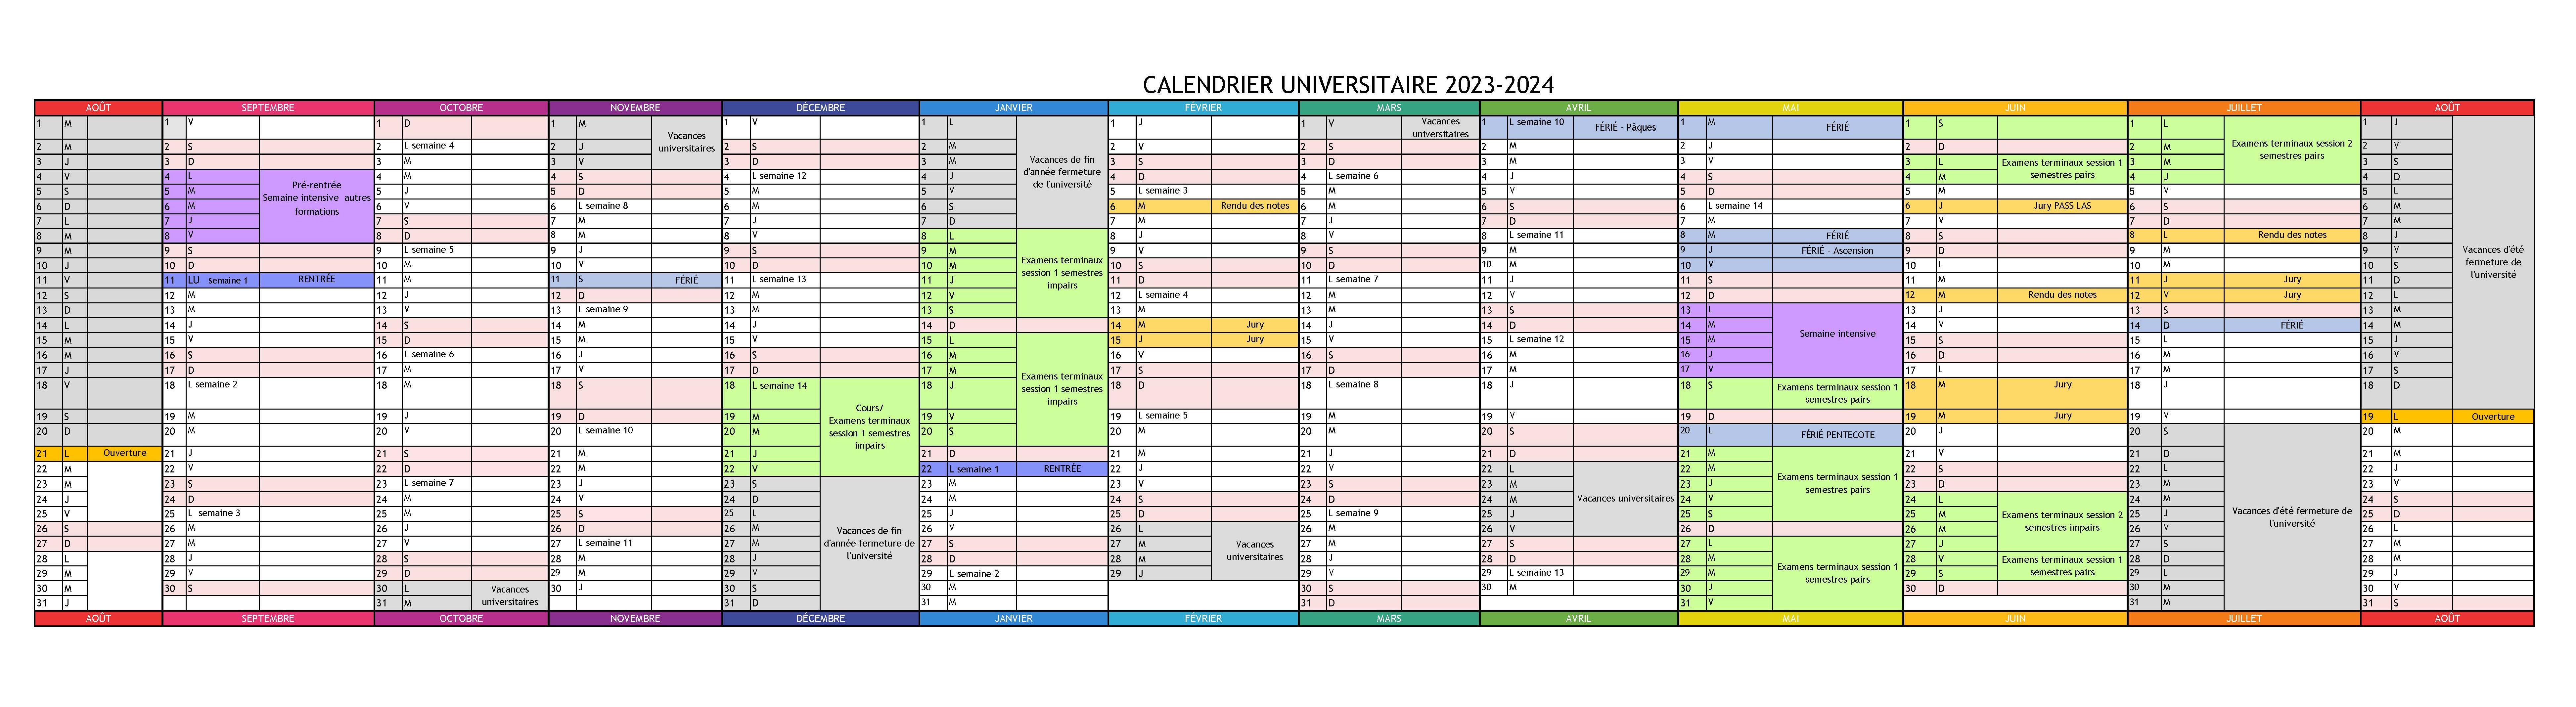 Calendrier universitaire 2023-2024